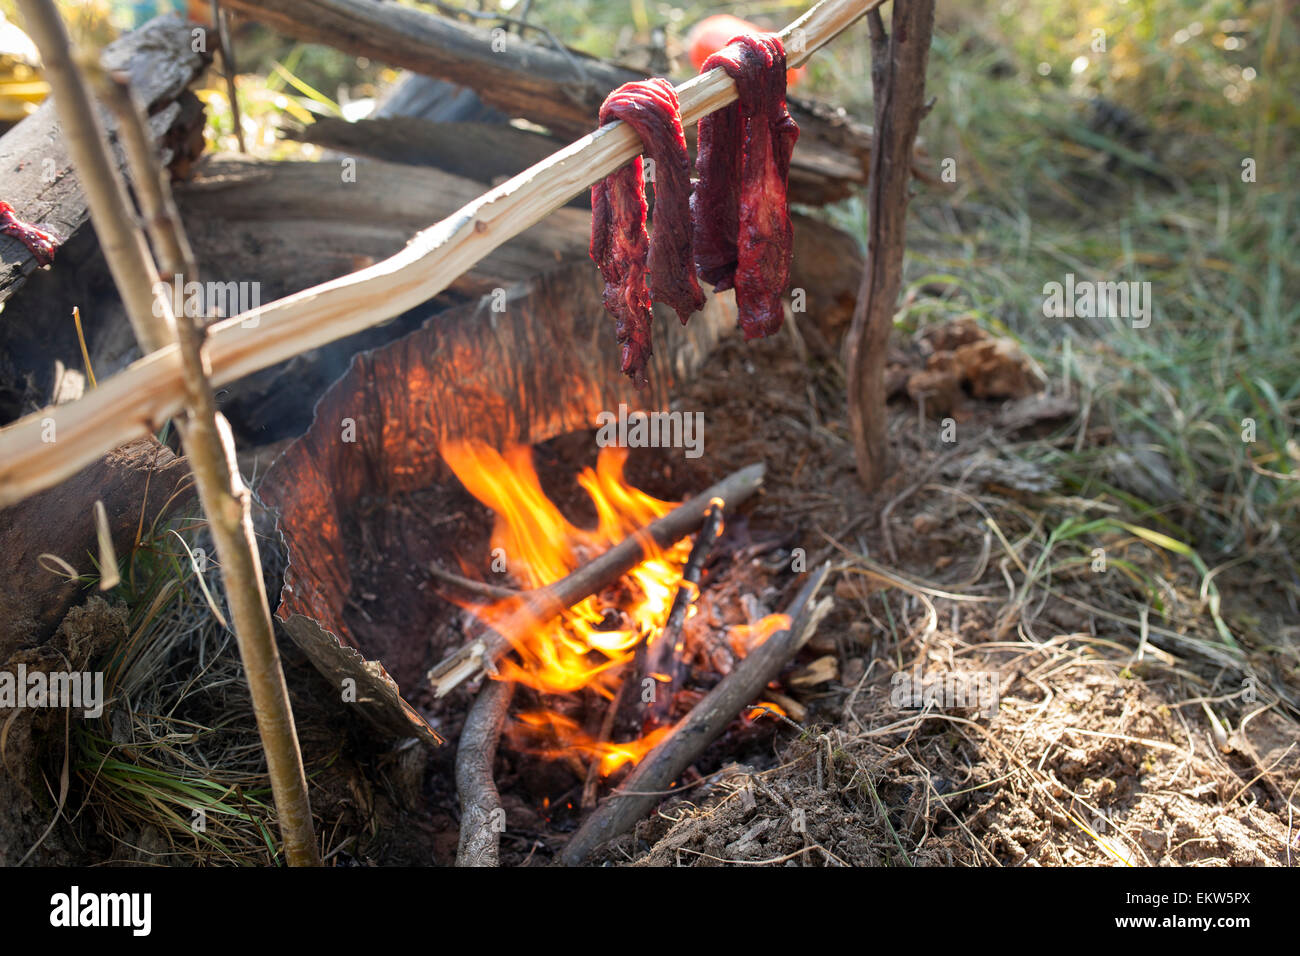 Carne cocinando sobre un fuego fotografías e imágenes de alta resolución -  Alamy